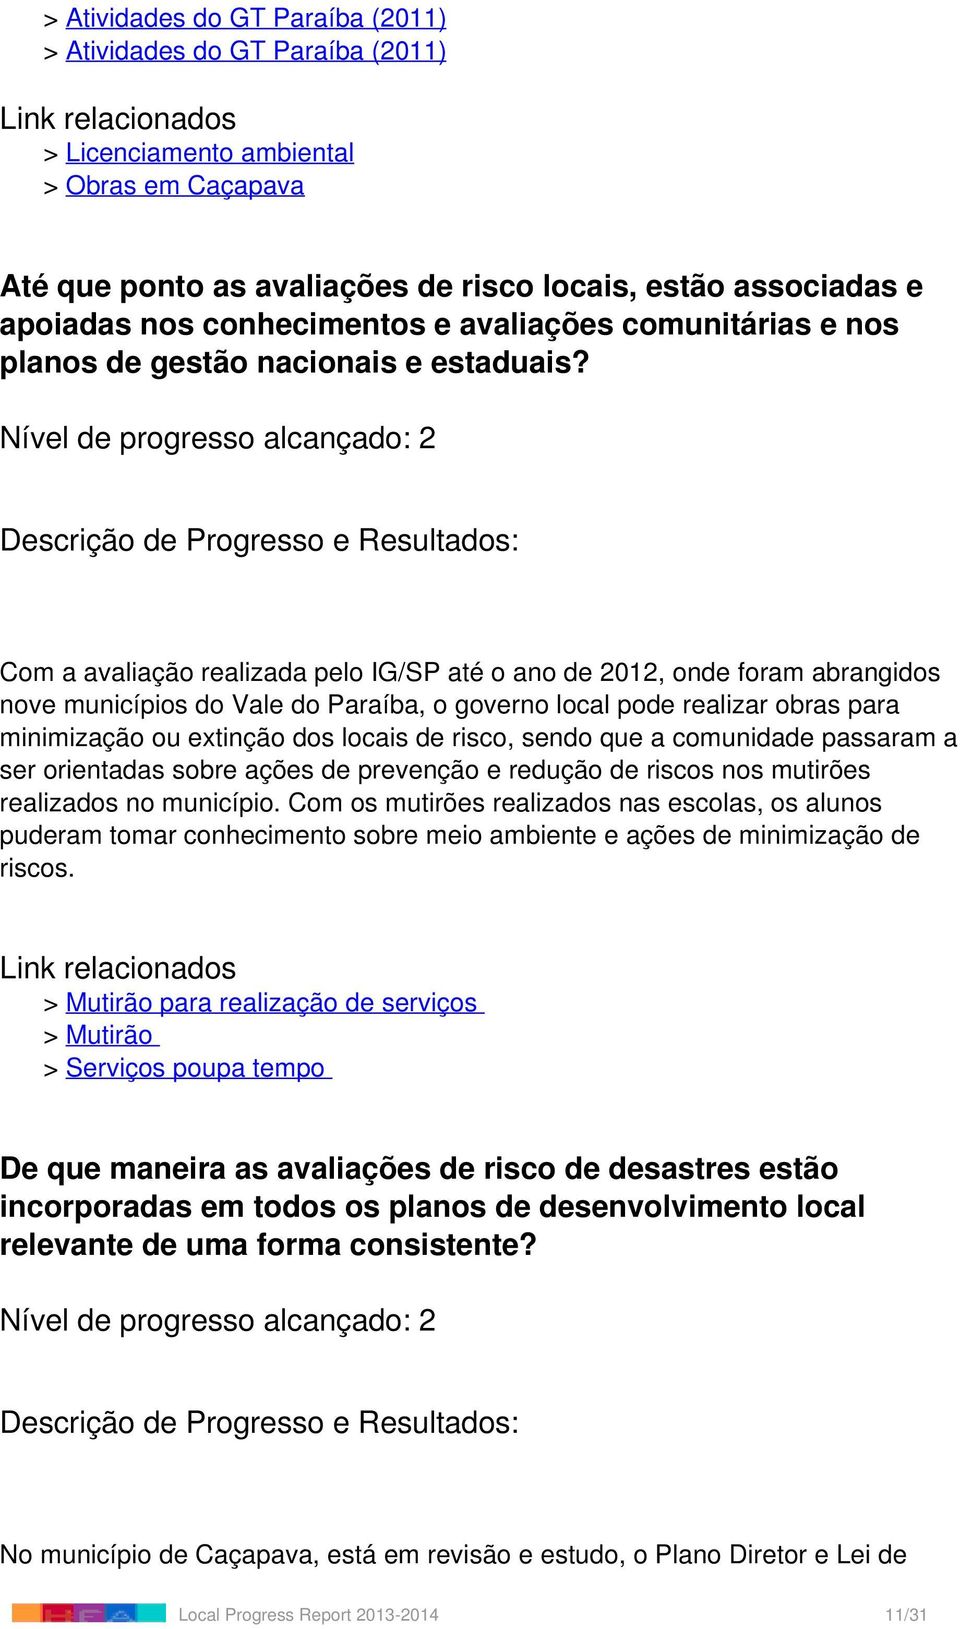 Nível de progresso alcançado: 2 Com a avaliação realizada pelo IG/SP até o ano de 2012, onde foram abrangidos nove municípios do Vale do Paraíba, o governo local pode realizar obras para minimização